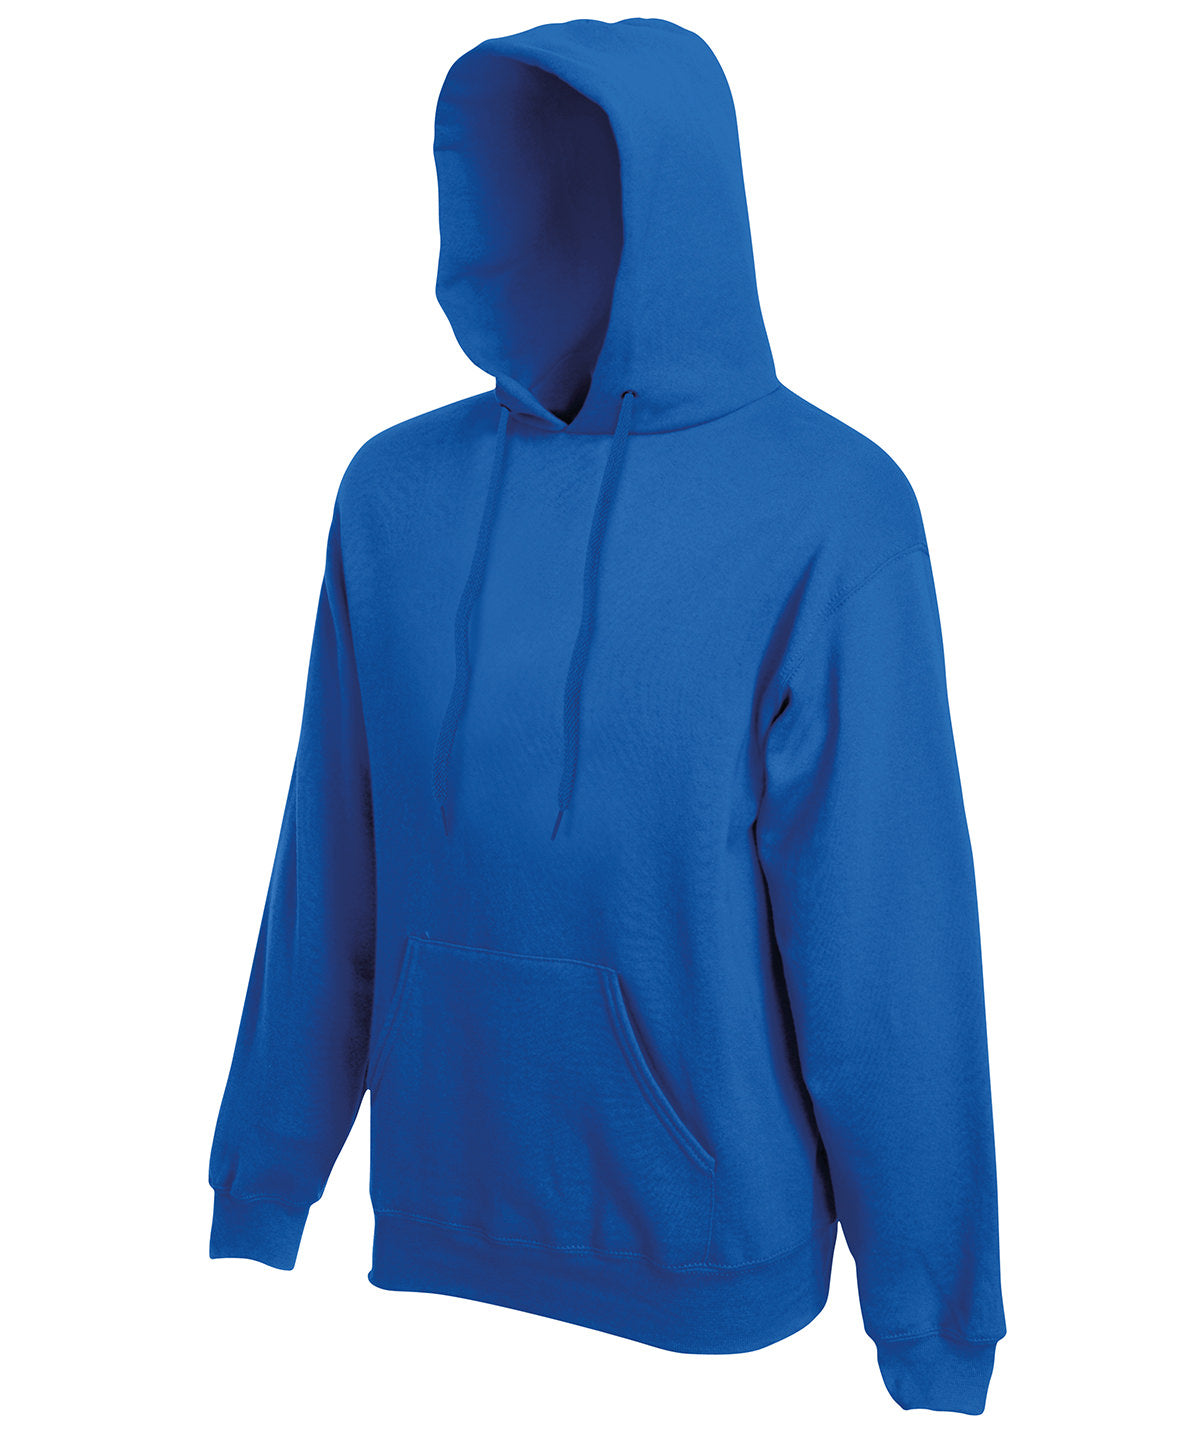 Hettupeysur - Premium 70/30 Hooded Sweatshirt